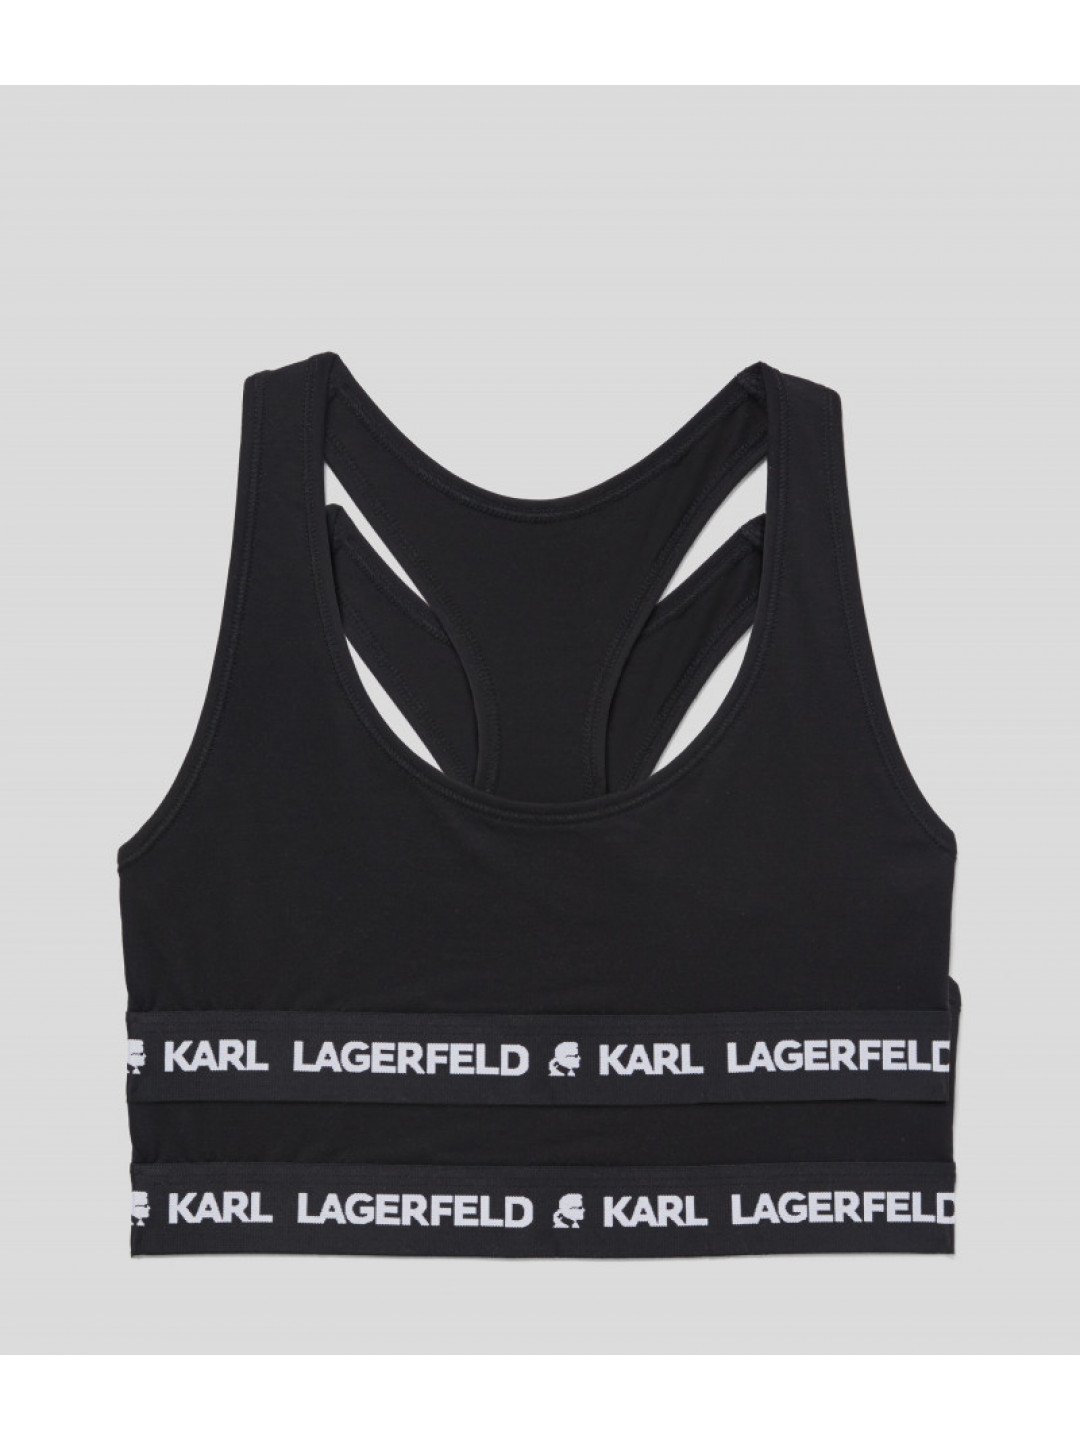 Spodní prádlo karl lagerfeld logo bralette 2-pack černá xs